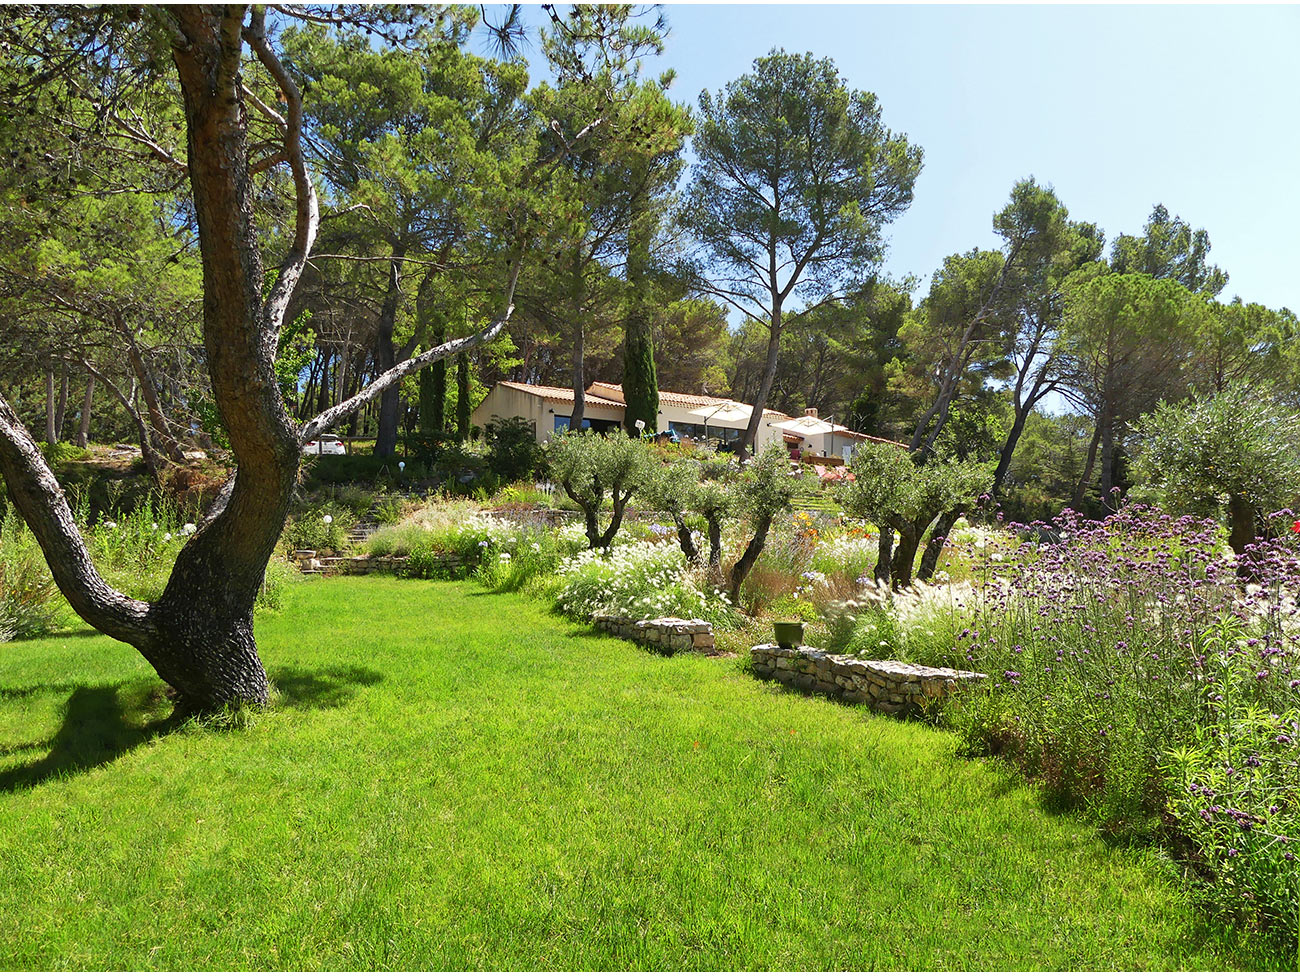 Atelier Naudier - Architecte paysagiste concepteur - Montpellier et Aix en Provence - Jardin méditerranéen contemporain - aménagement jardin